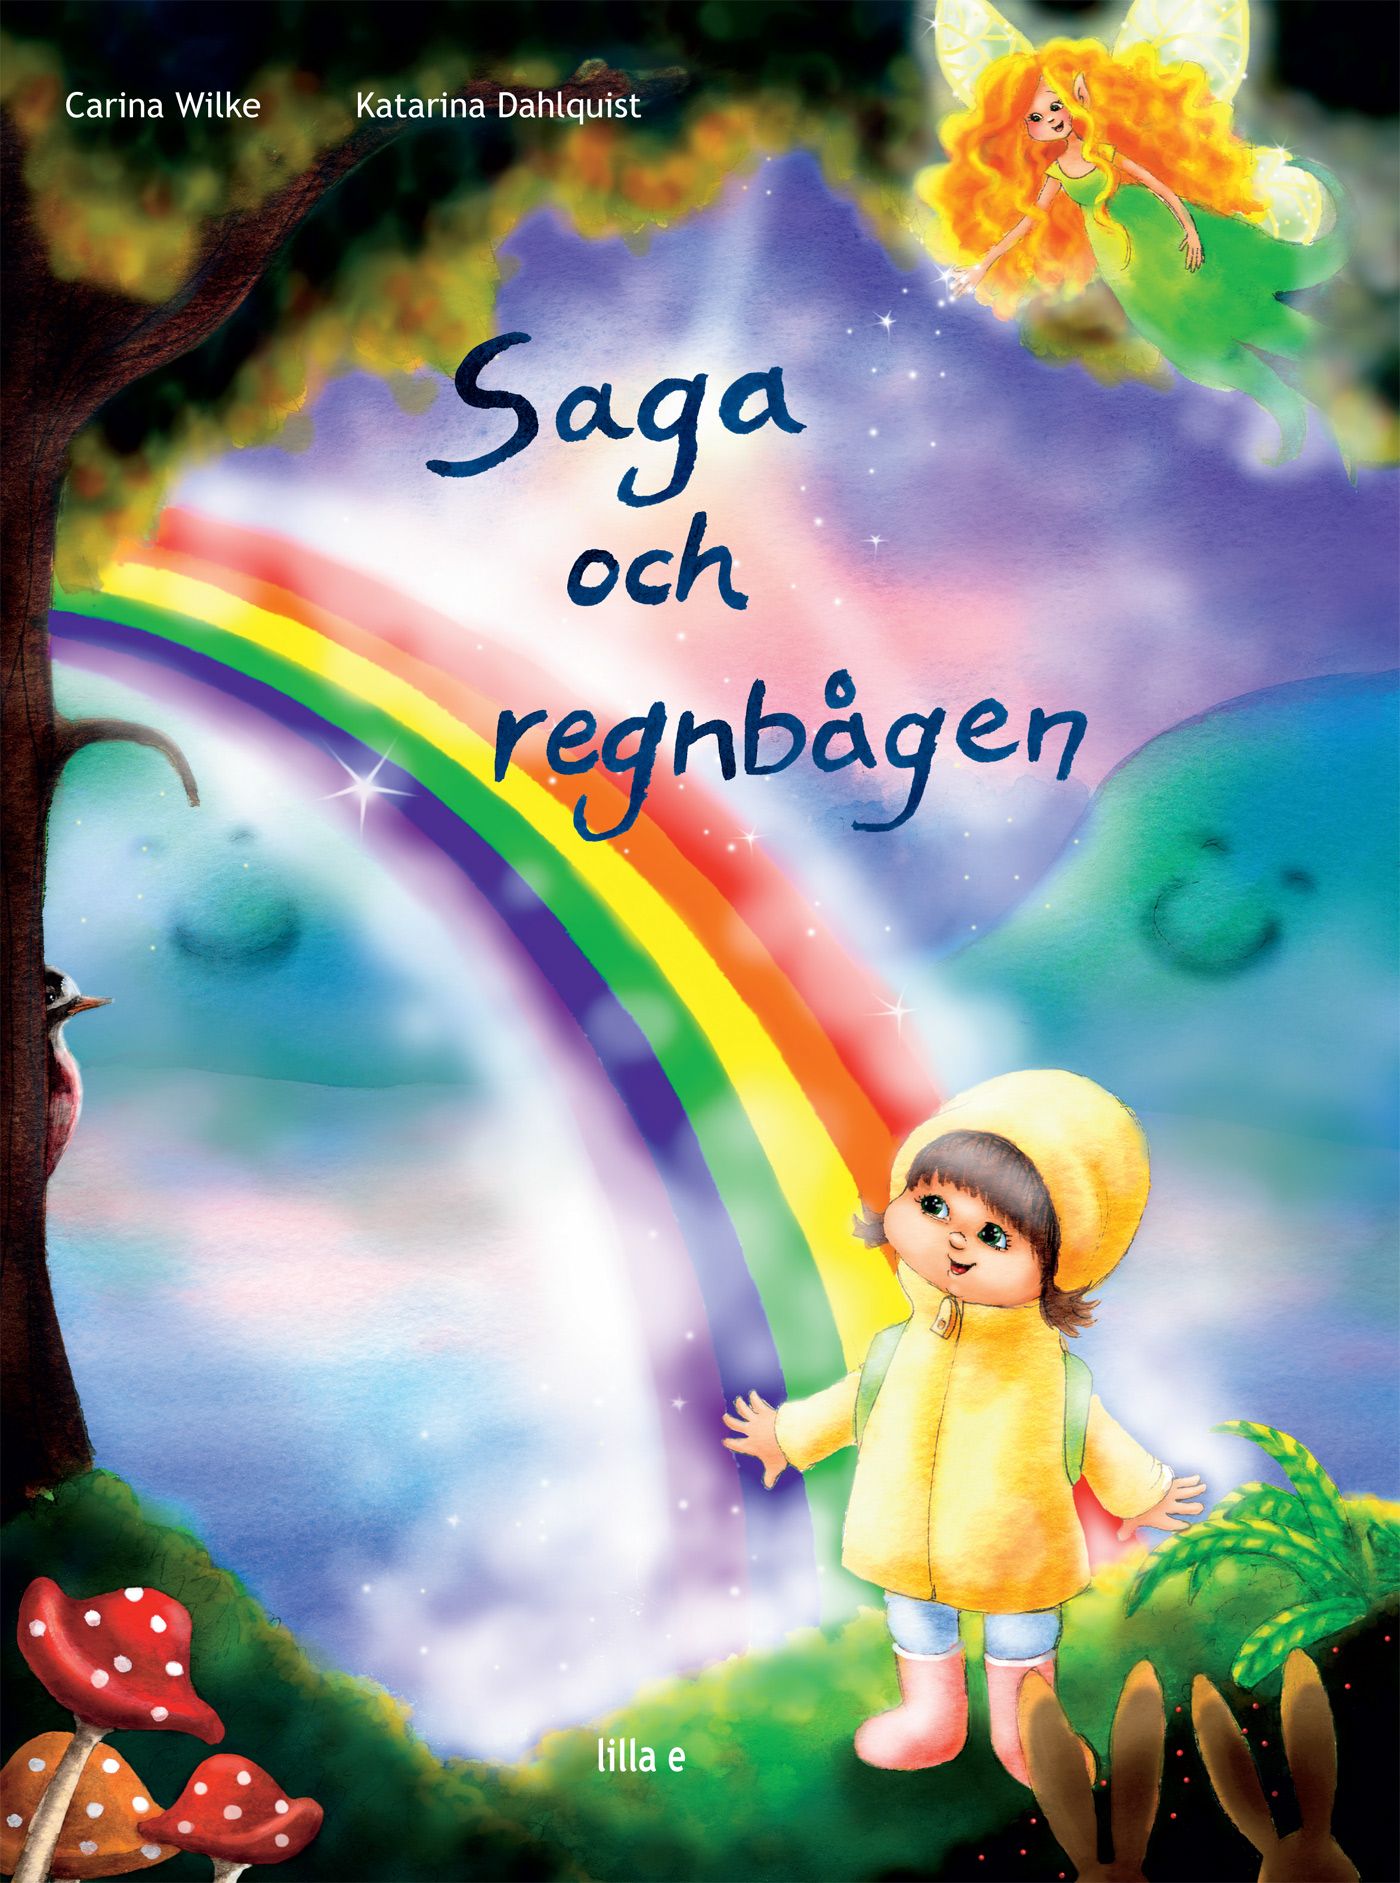 Saga och Regnbågen, e-bok av Carina Wilke